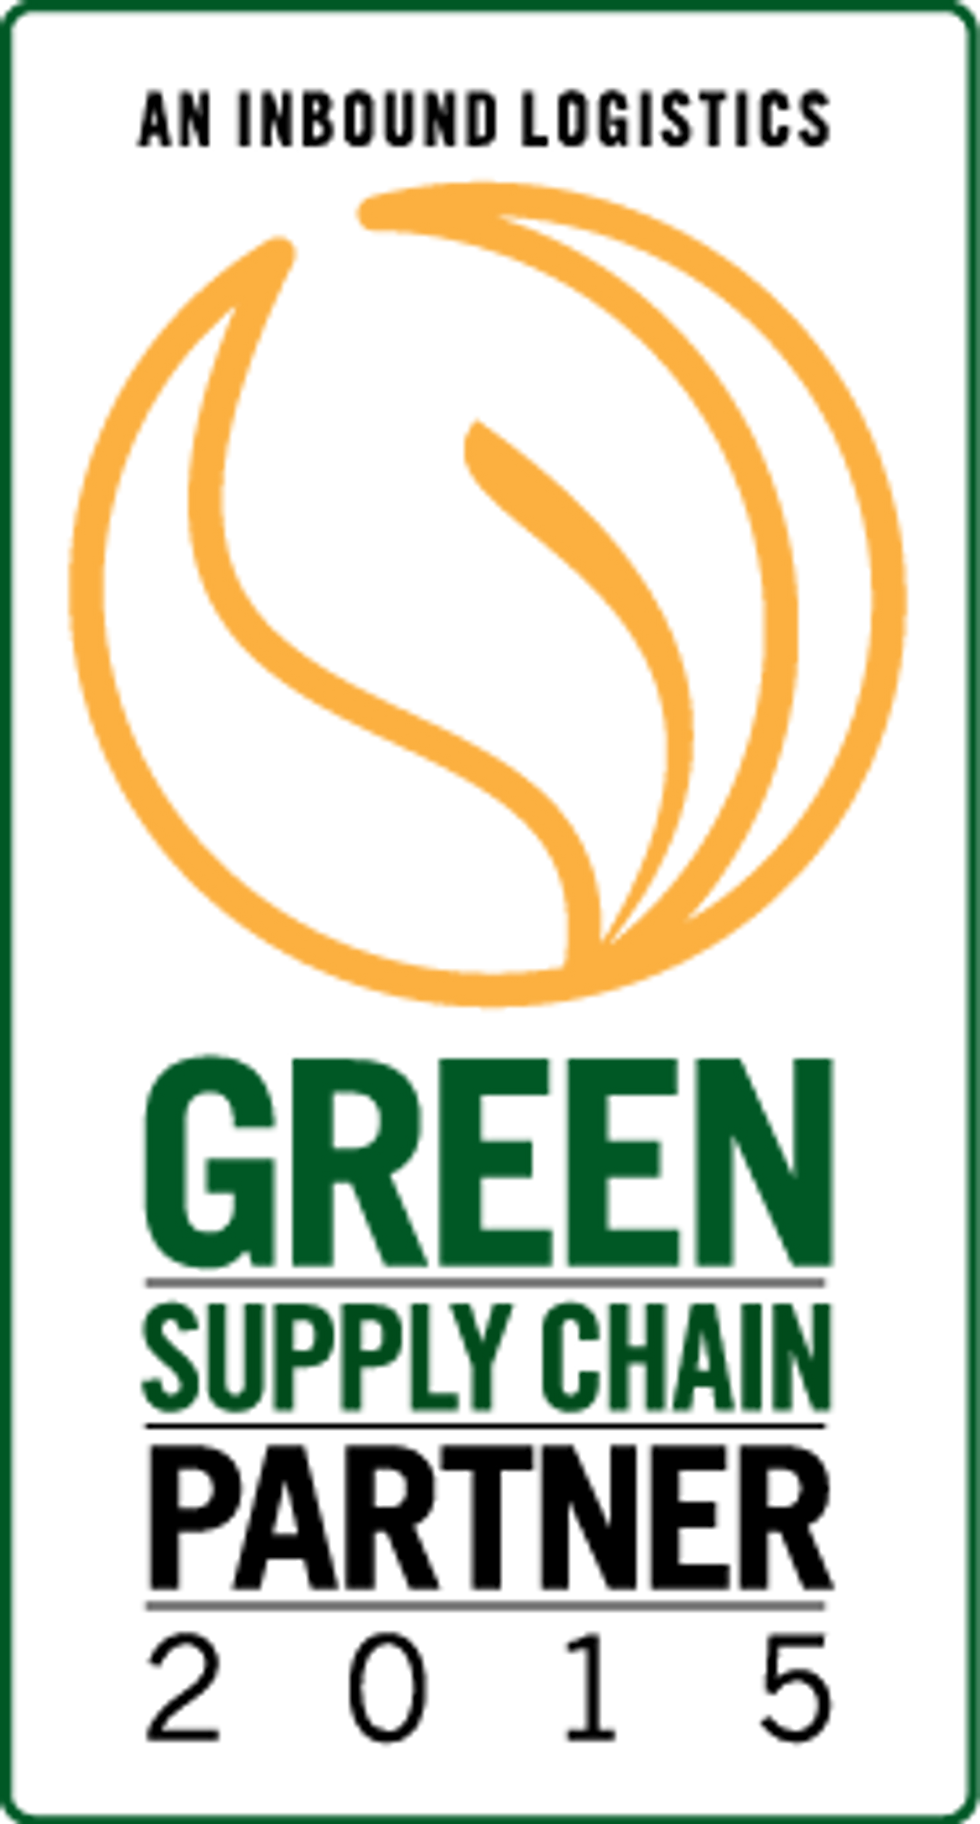 
Penske Named Inbound Logistics 75 Green Supply Chain Partner
